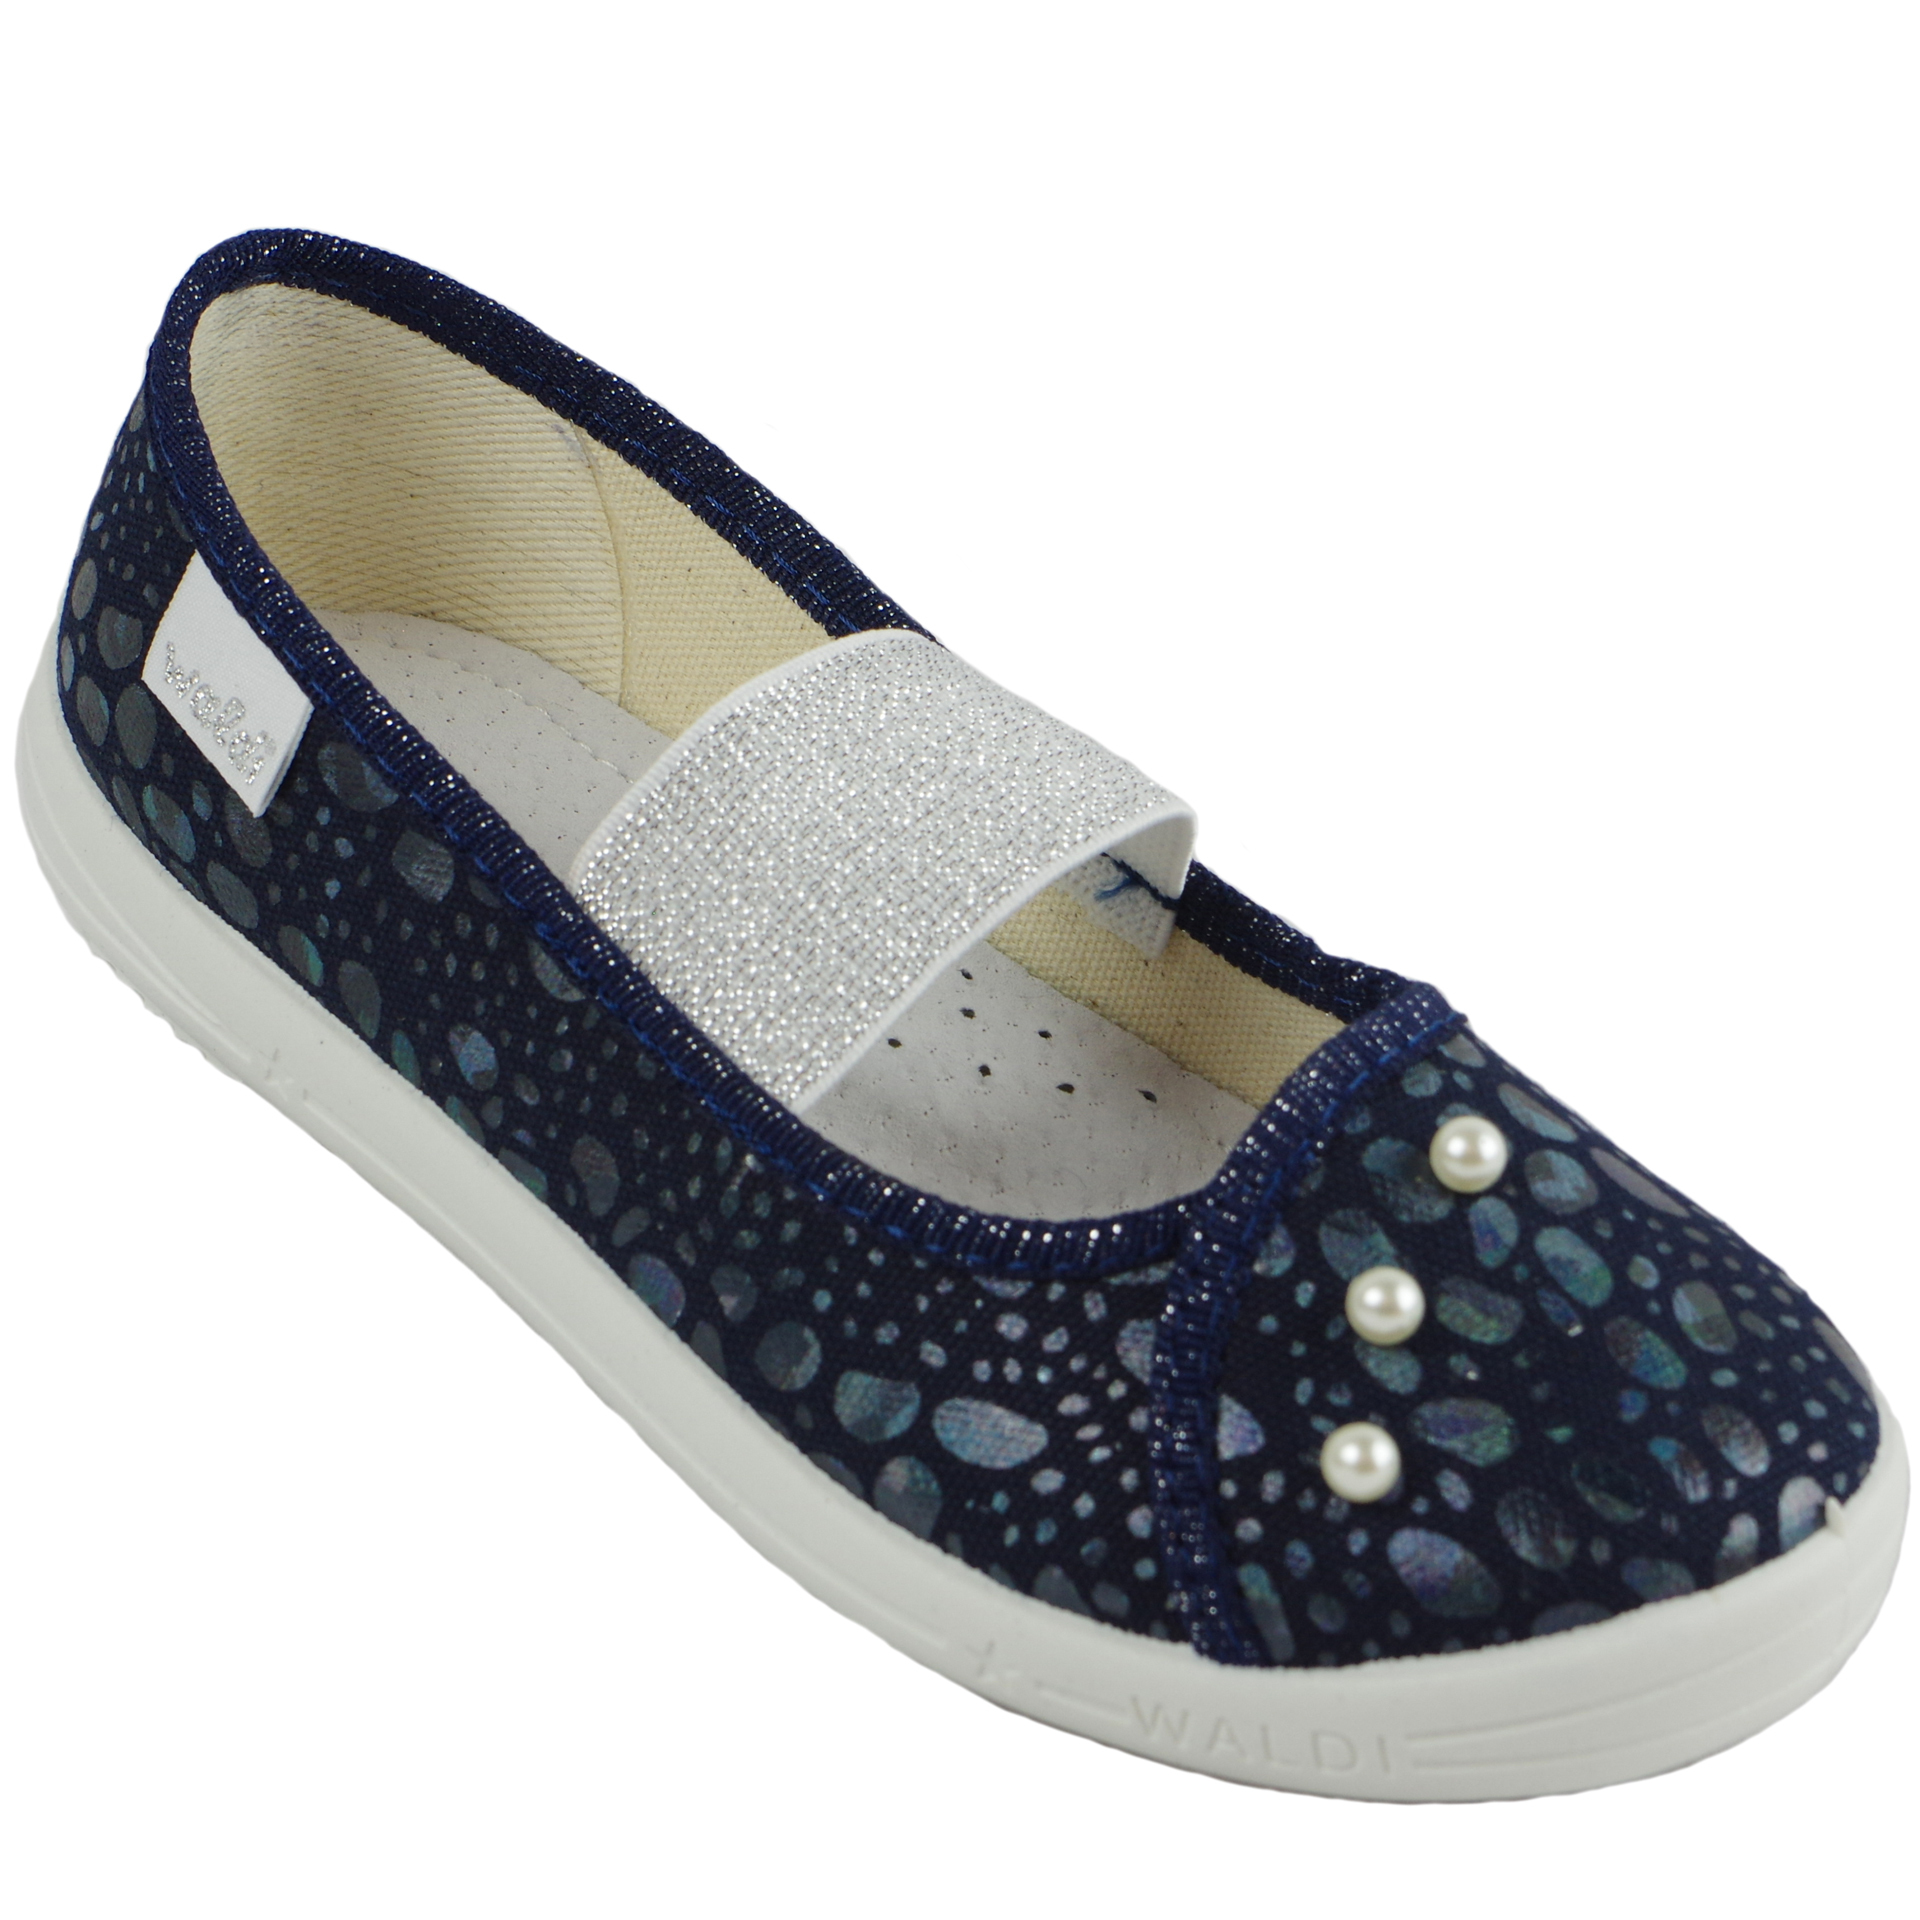 Текстильная обувь для девочек Тапочки Вероника (1919) цвет темно-синий 27-34 размеры – Sole Kids